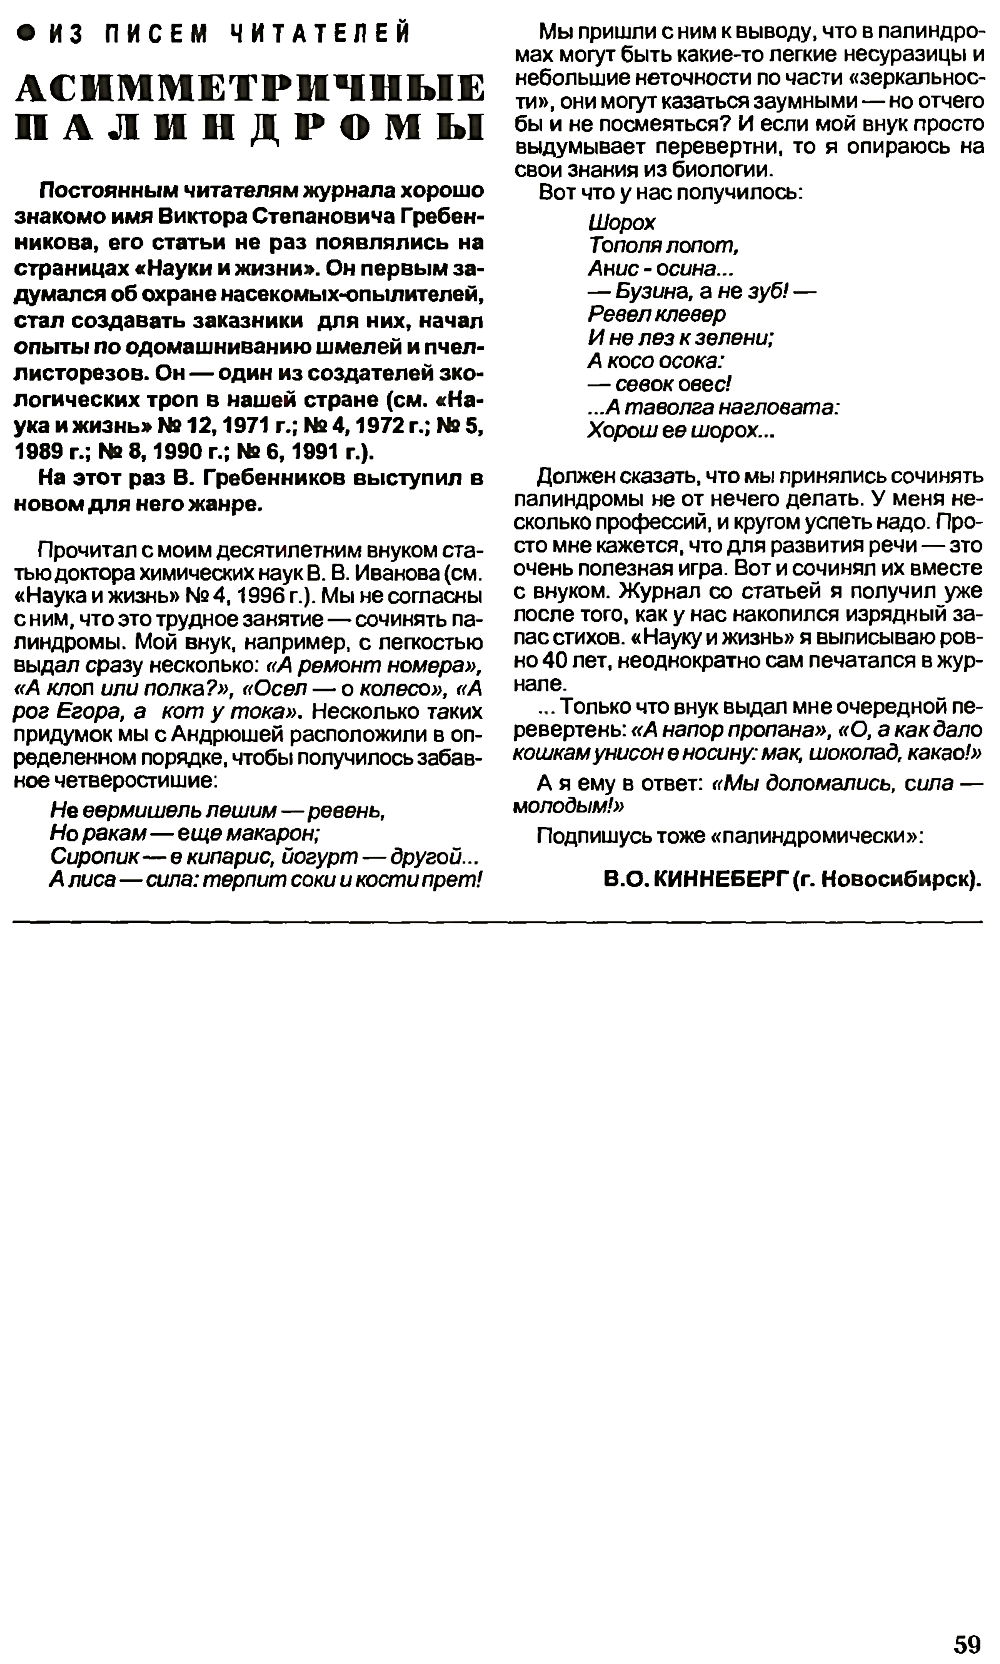 Асимметричные палиндромы. В.С. Гребенников. Наука и жизнь, 1997, №2, с.59